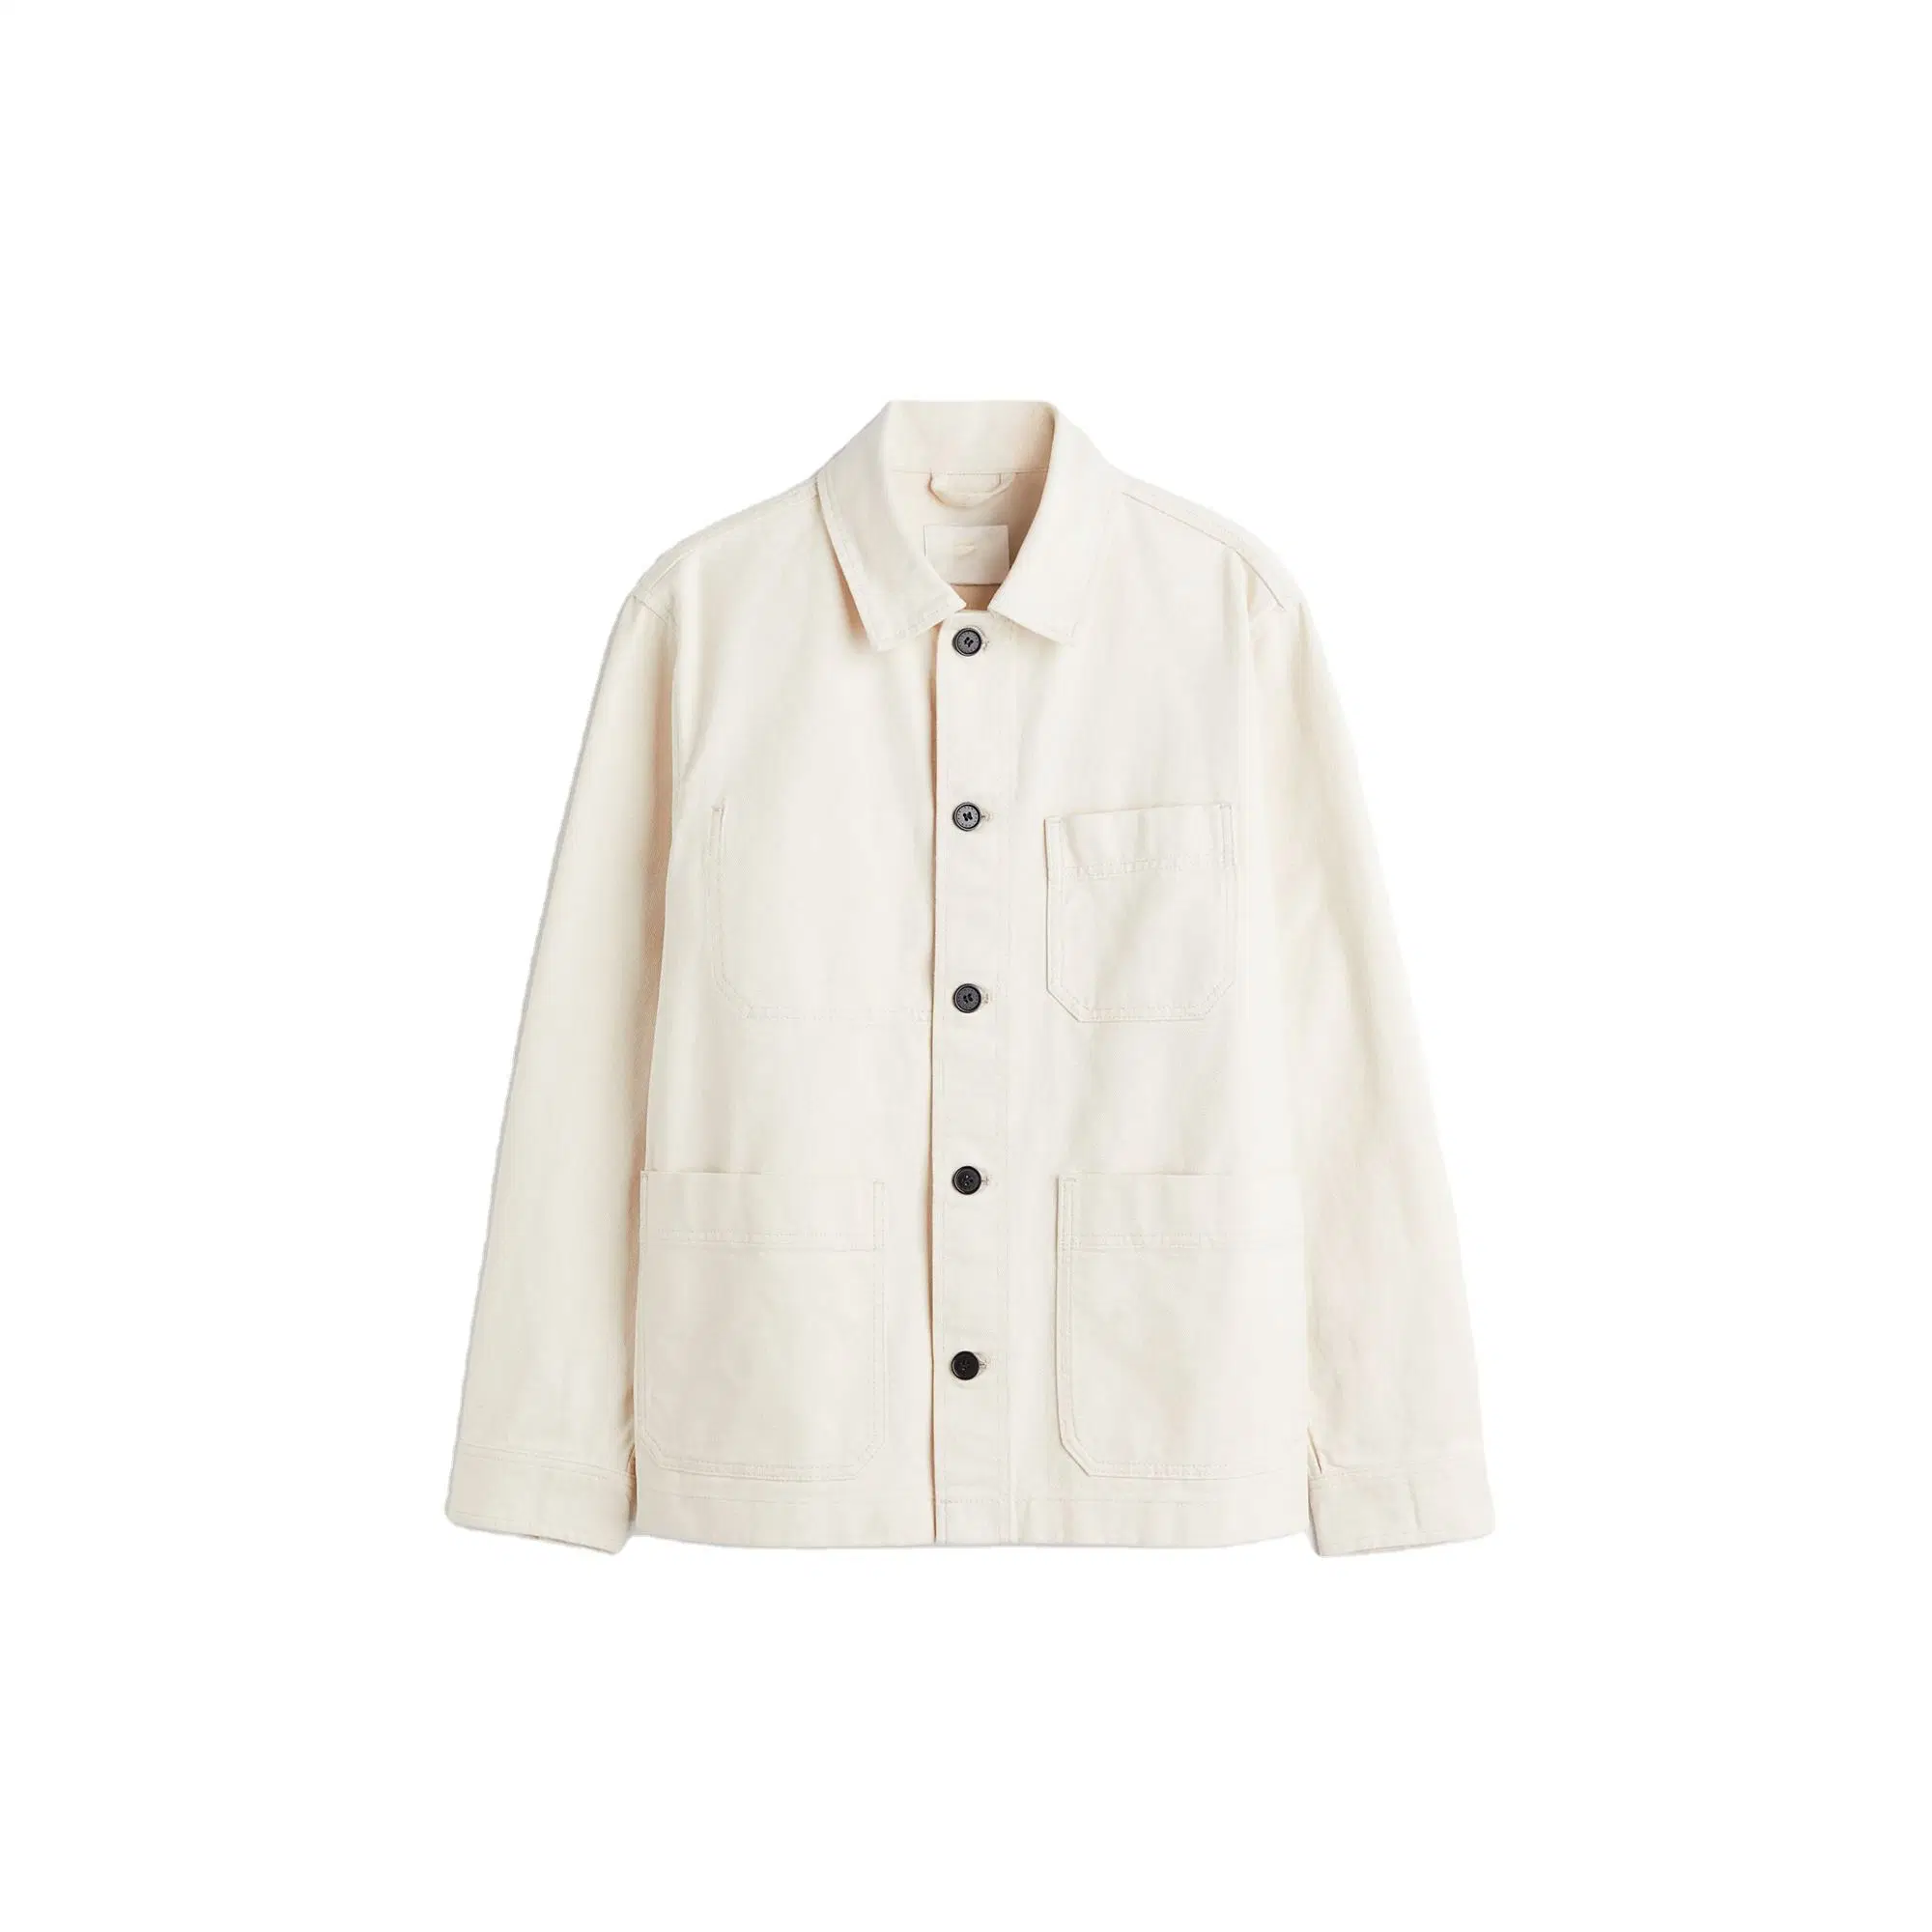 Long Sleeve Three Pocket Denim Overshirt White Denim Jacket Shirt